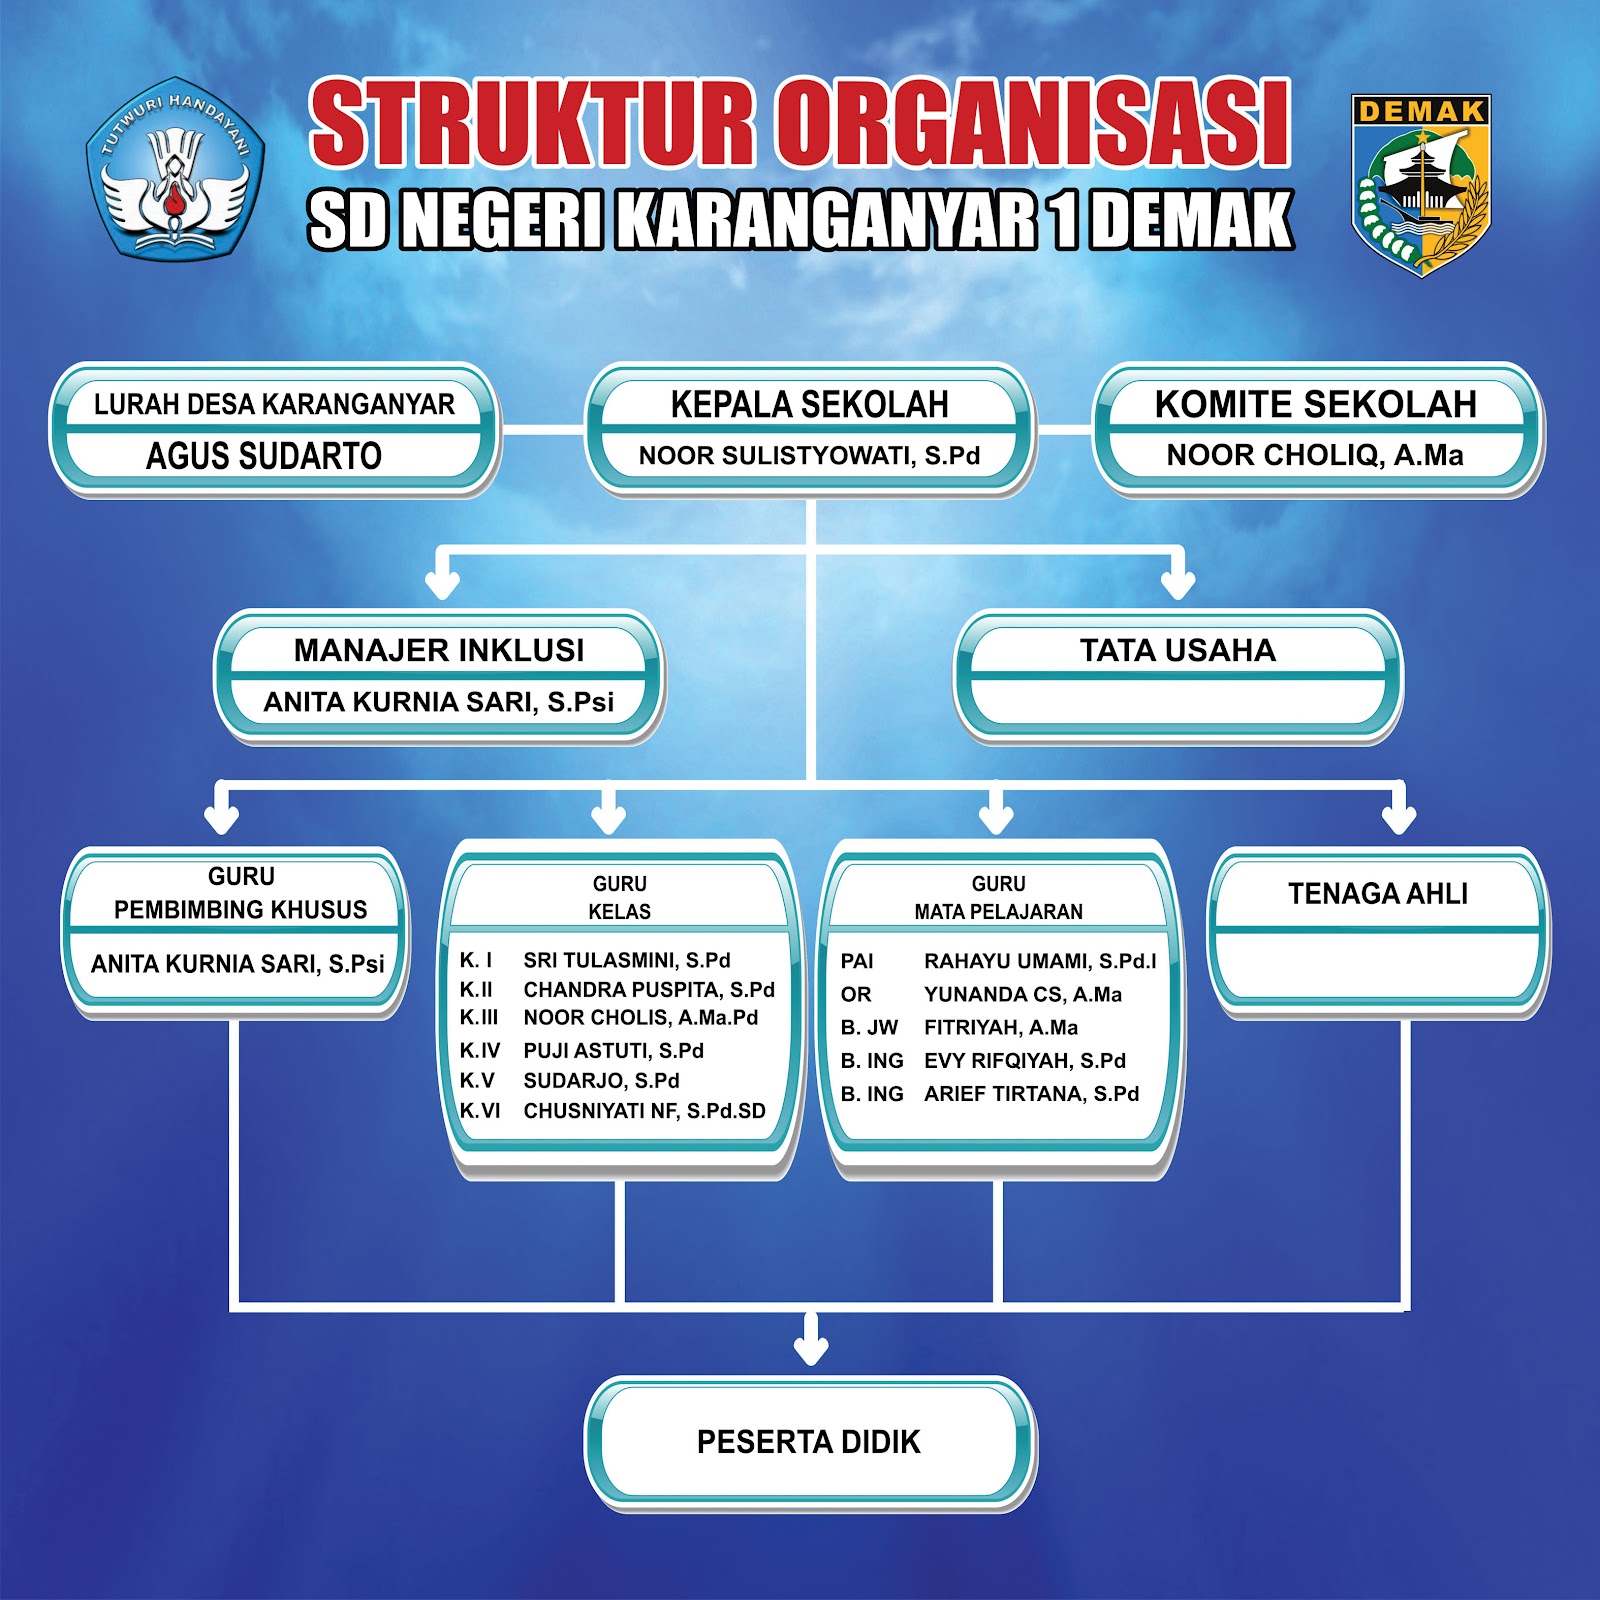 SD NEGERI KARANGANYAR 1 Struktur  Organisasi  Sekolah  